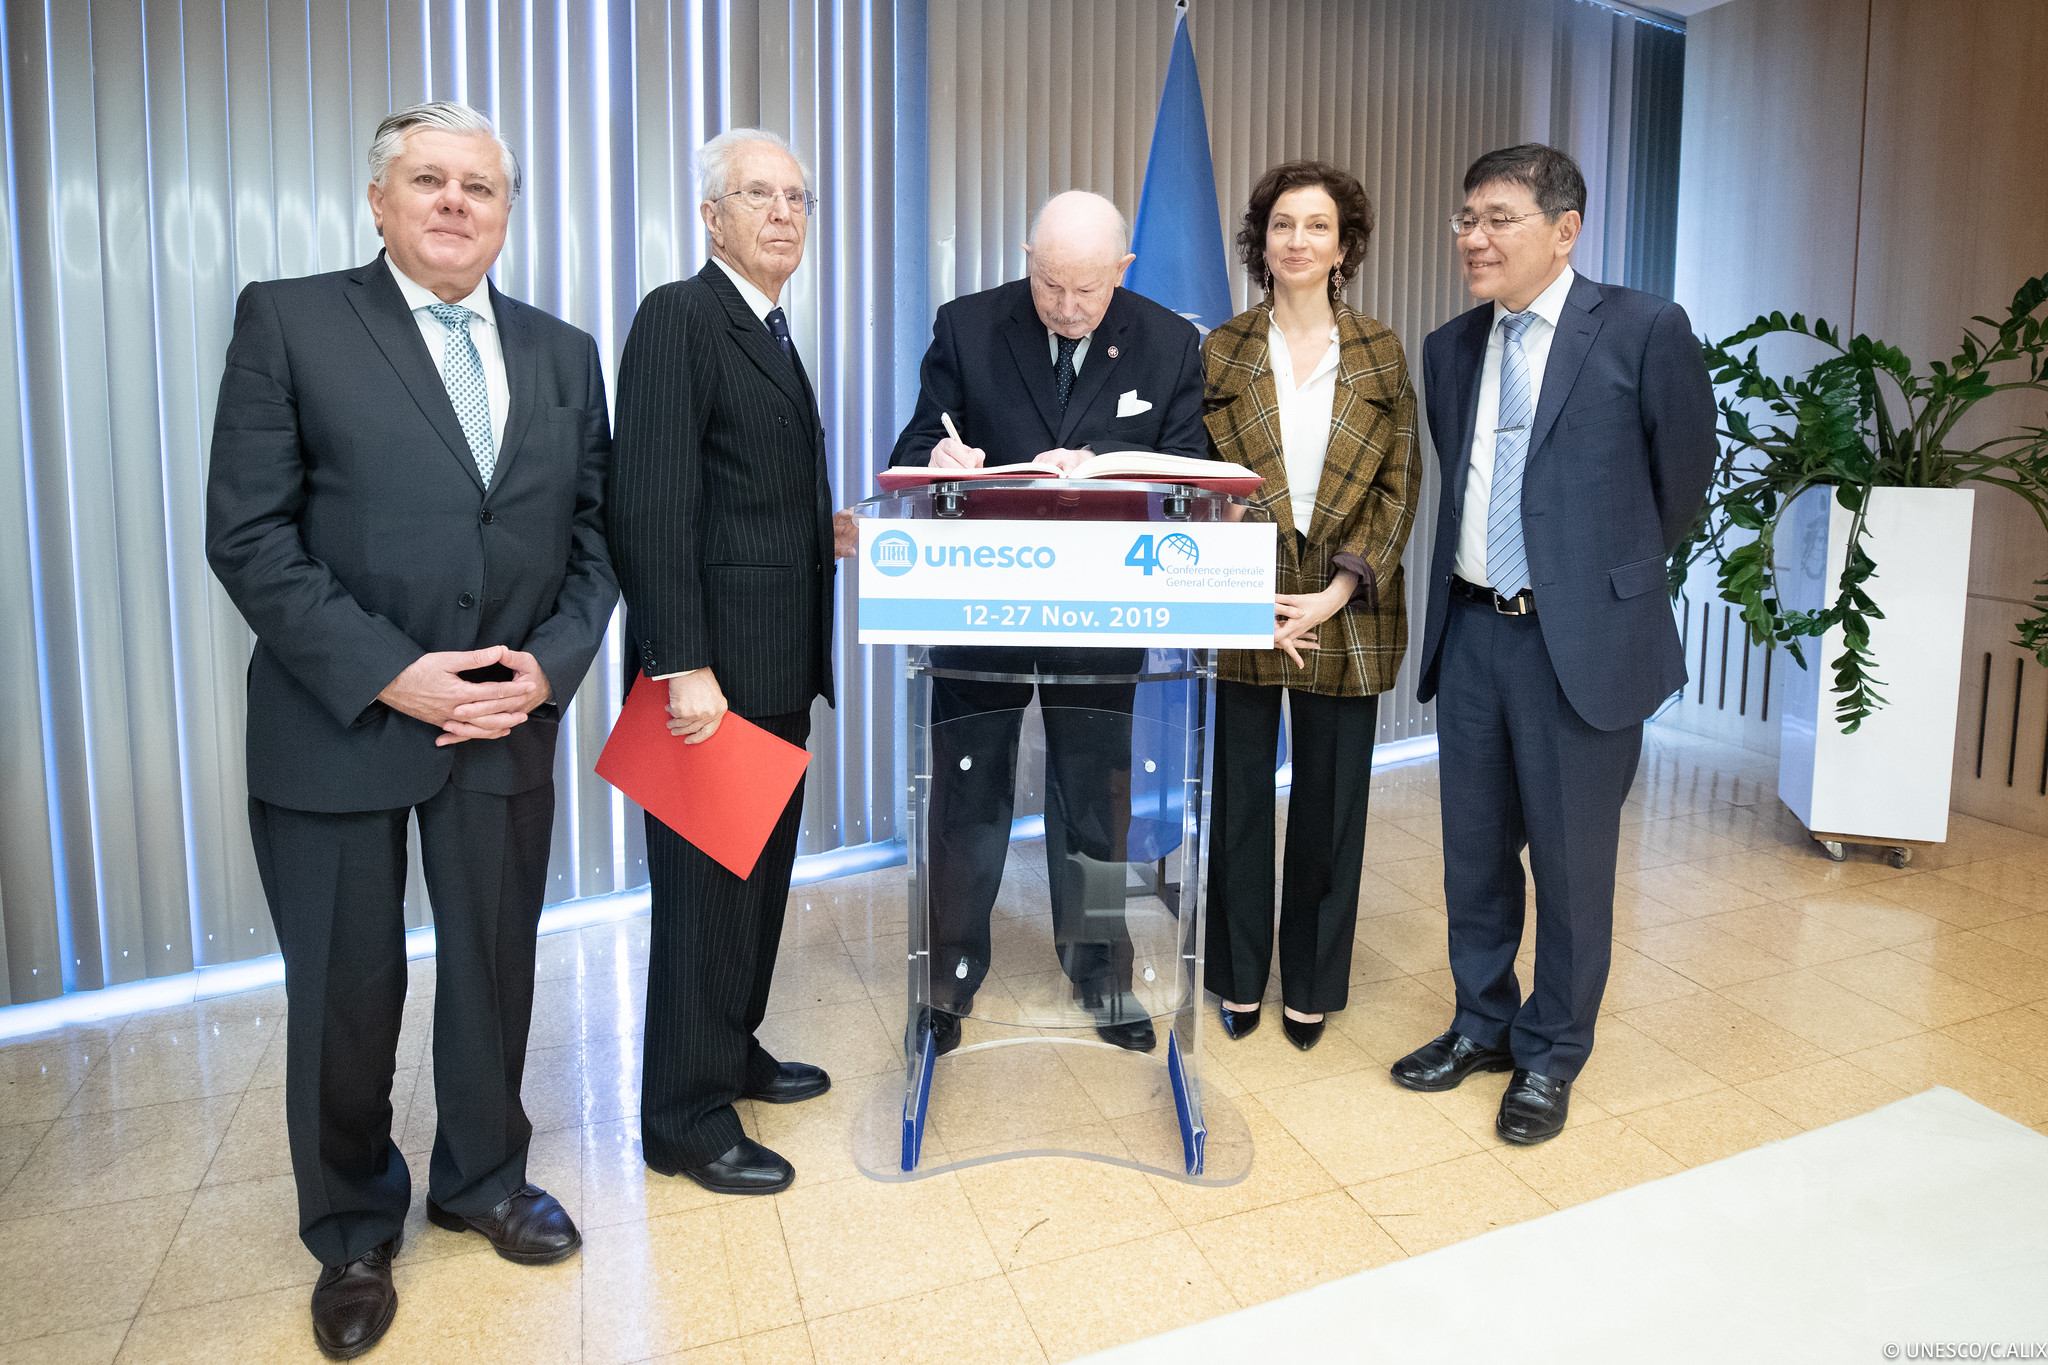 Le Grand Maître de l’Ordre de Malte en visite à l’UNESCO salue l’engagement pour le progrès et le respect de la dignité humaine